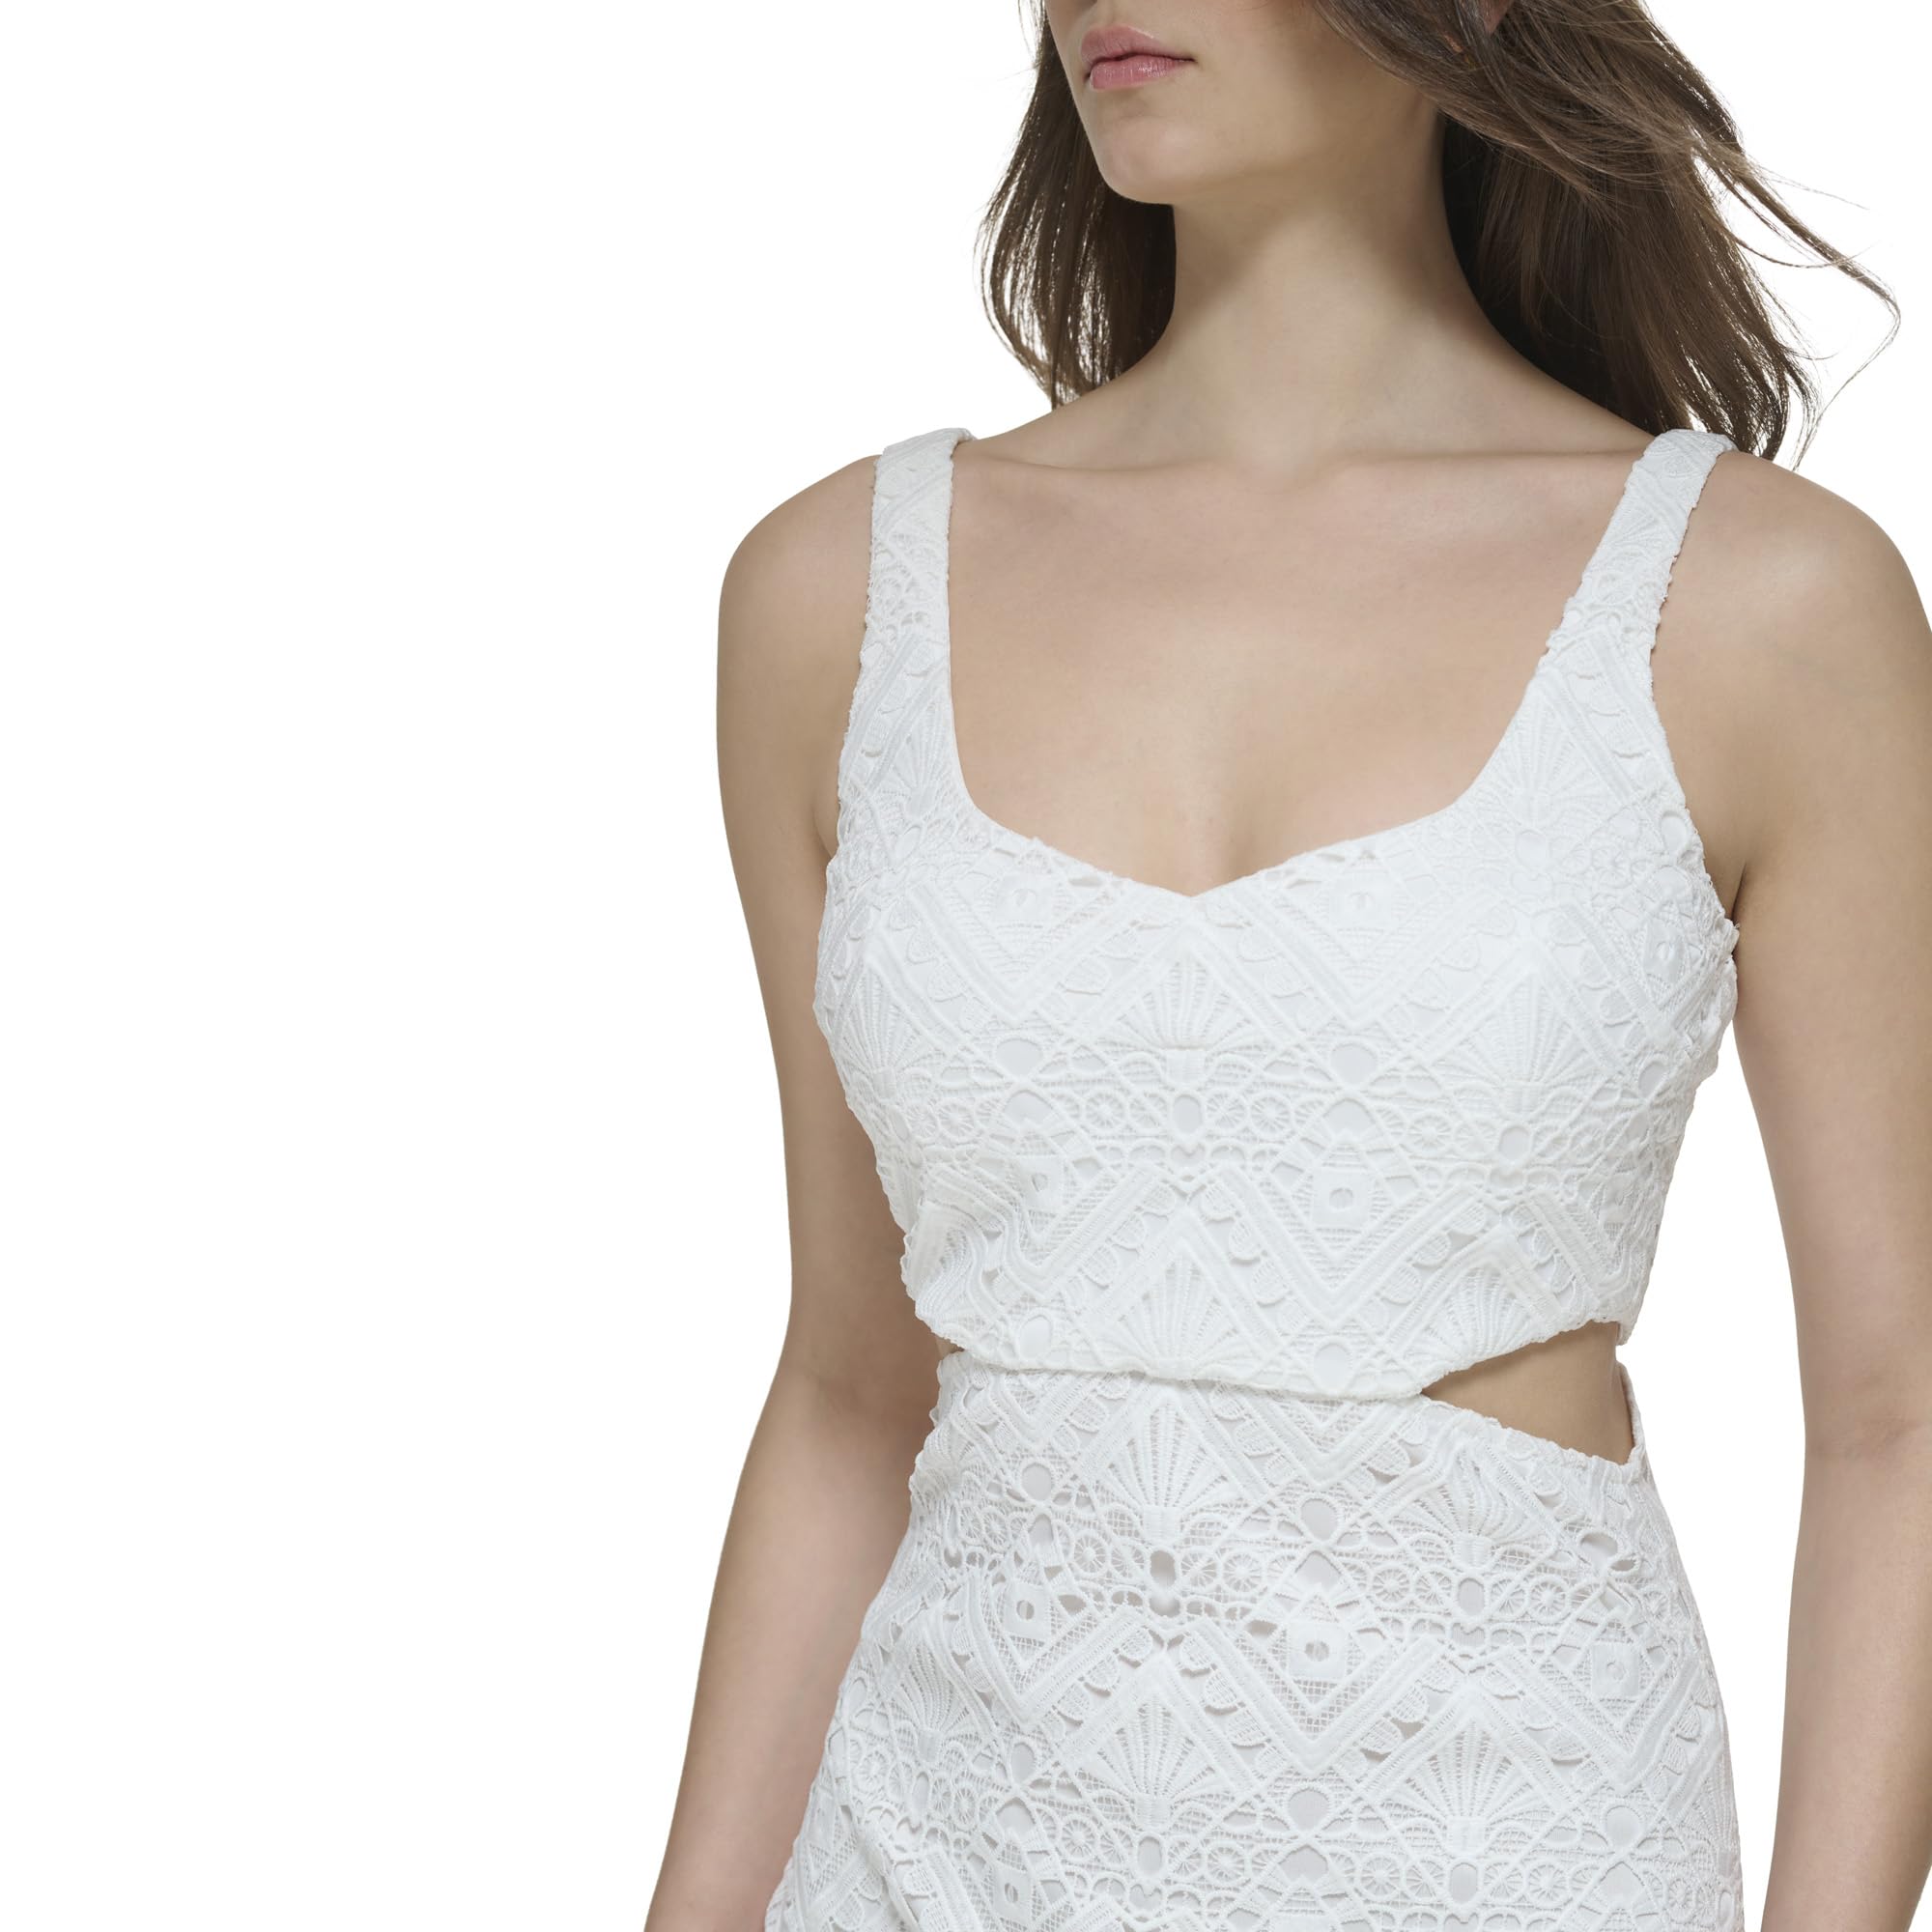 GUESS Women's Sleeveless Lace Cut Out Sheath Dress, White